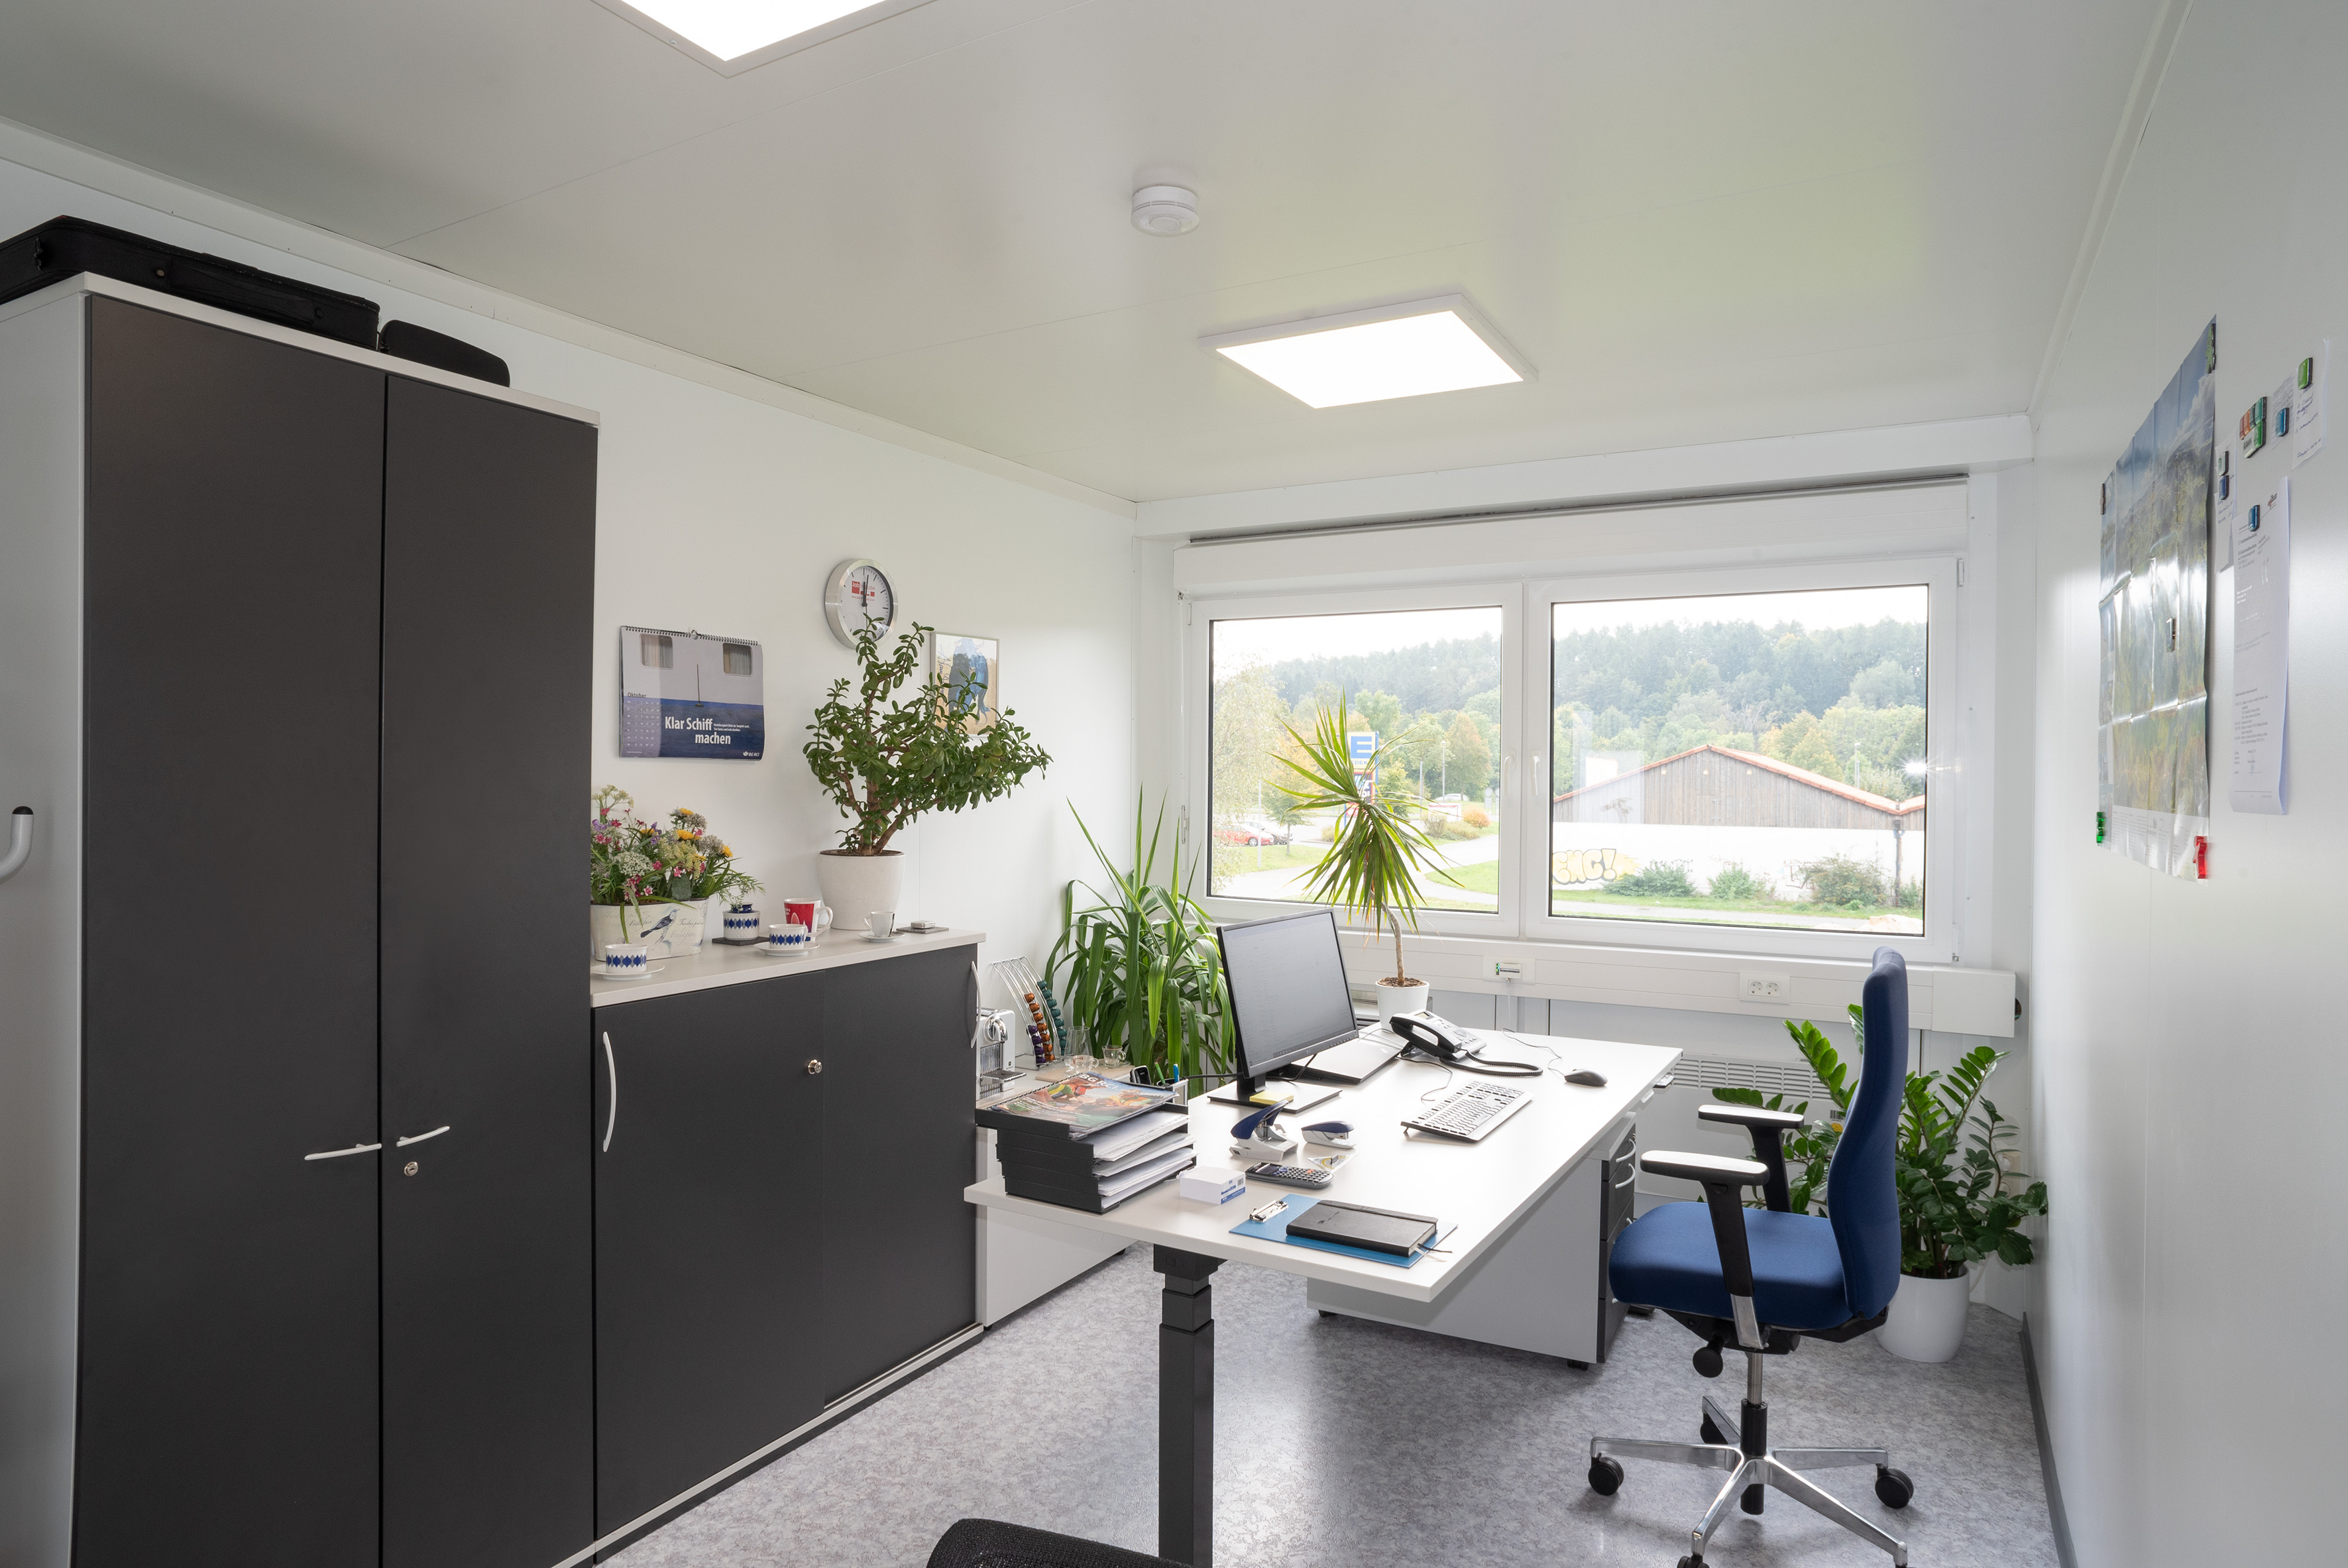 Les bureaux offrent une atmosphère de travail lumineuse et agréable.